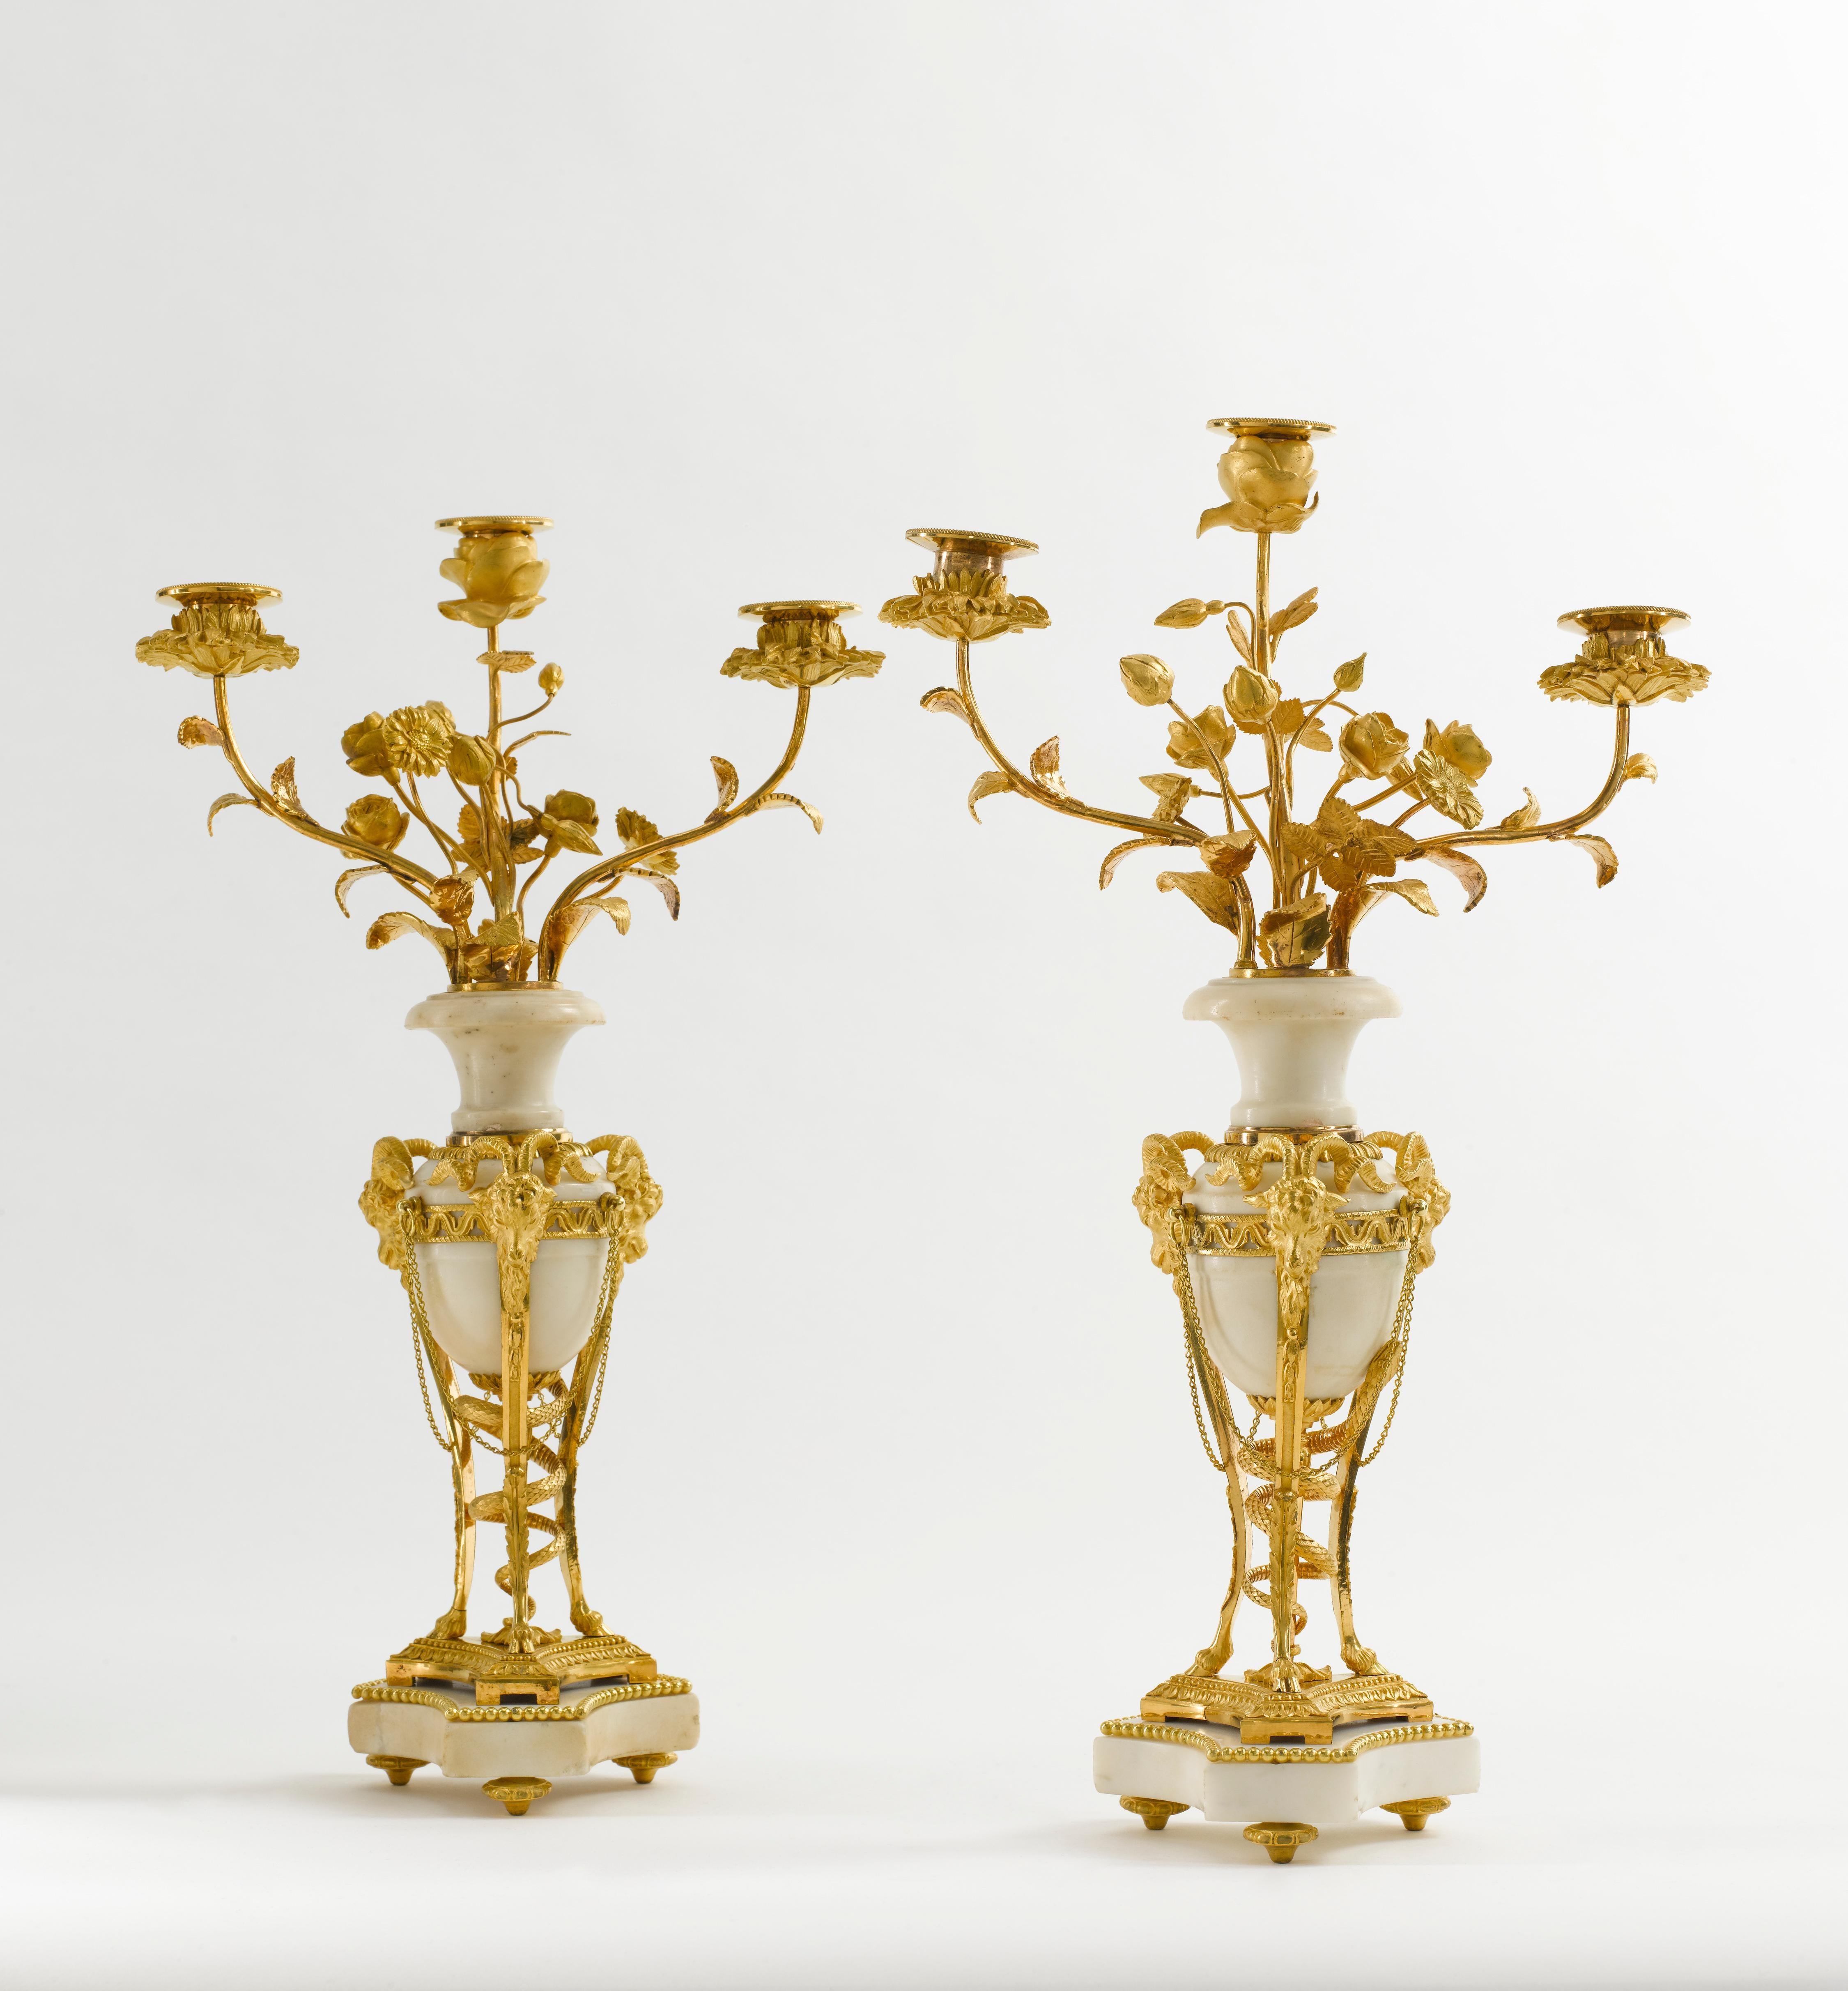 Ein feines Paar von Louis XVI weißem Marmor und vergoldeter Bronze Kandelaber in Form von atheniennes. Der Dreifuß mit Widderkopf hat eine Schlange, die sich durch den Stiel schlängelt. Der zentrale, eiförmige Körper aus weißem Marmor hat drei